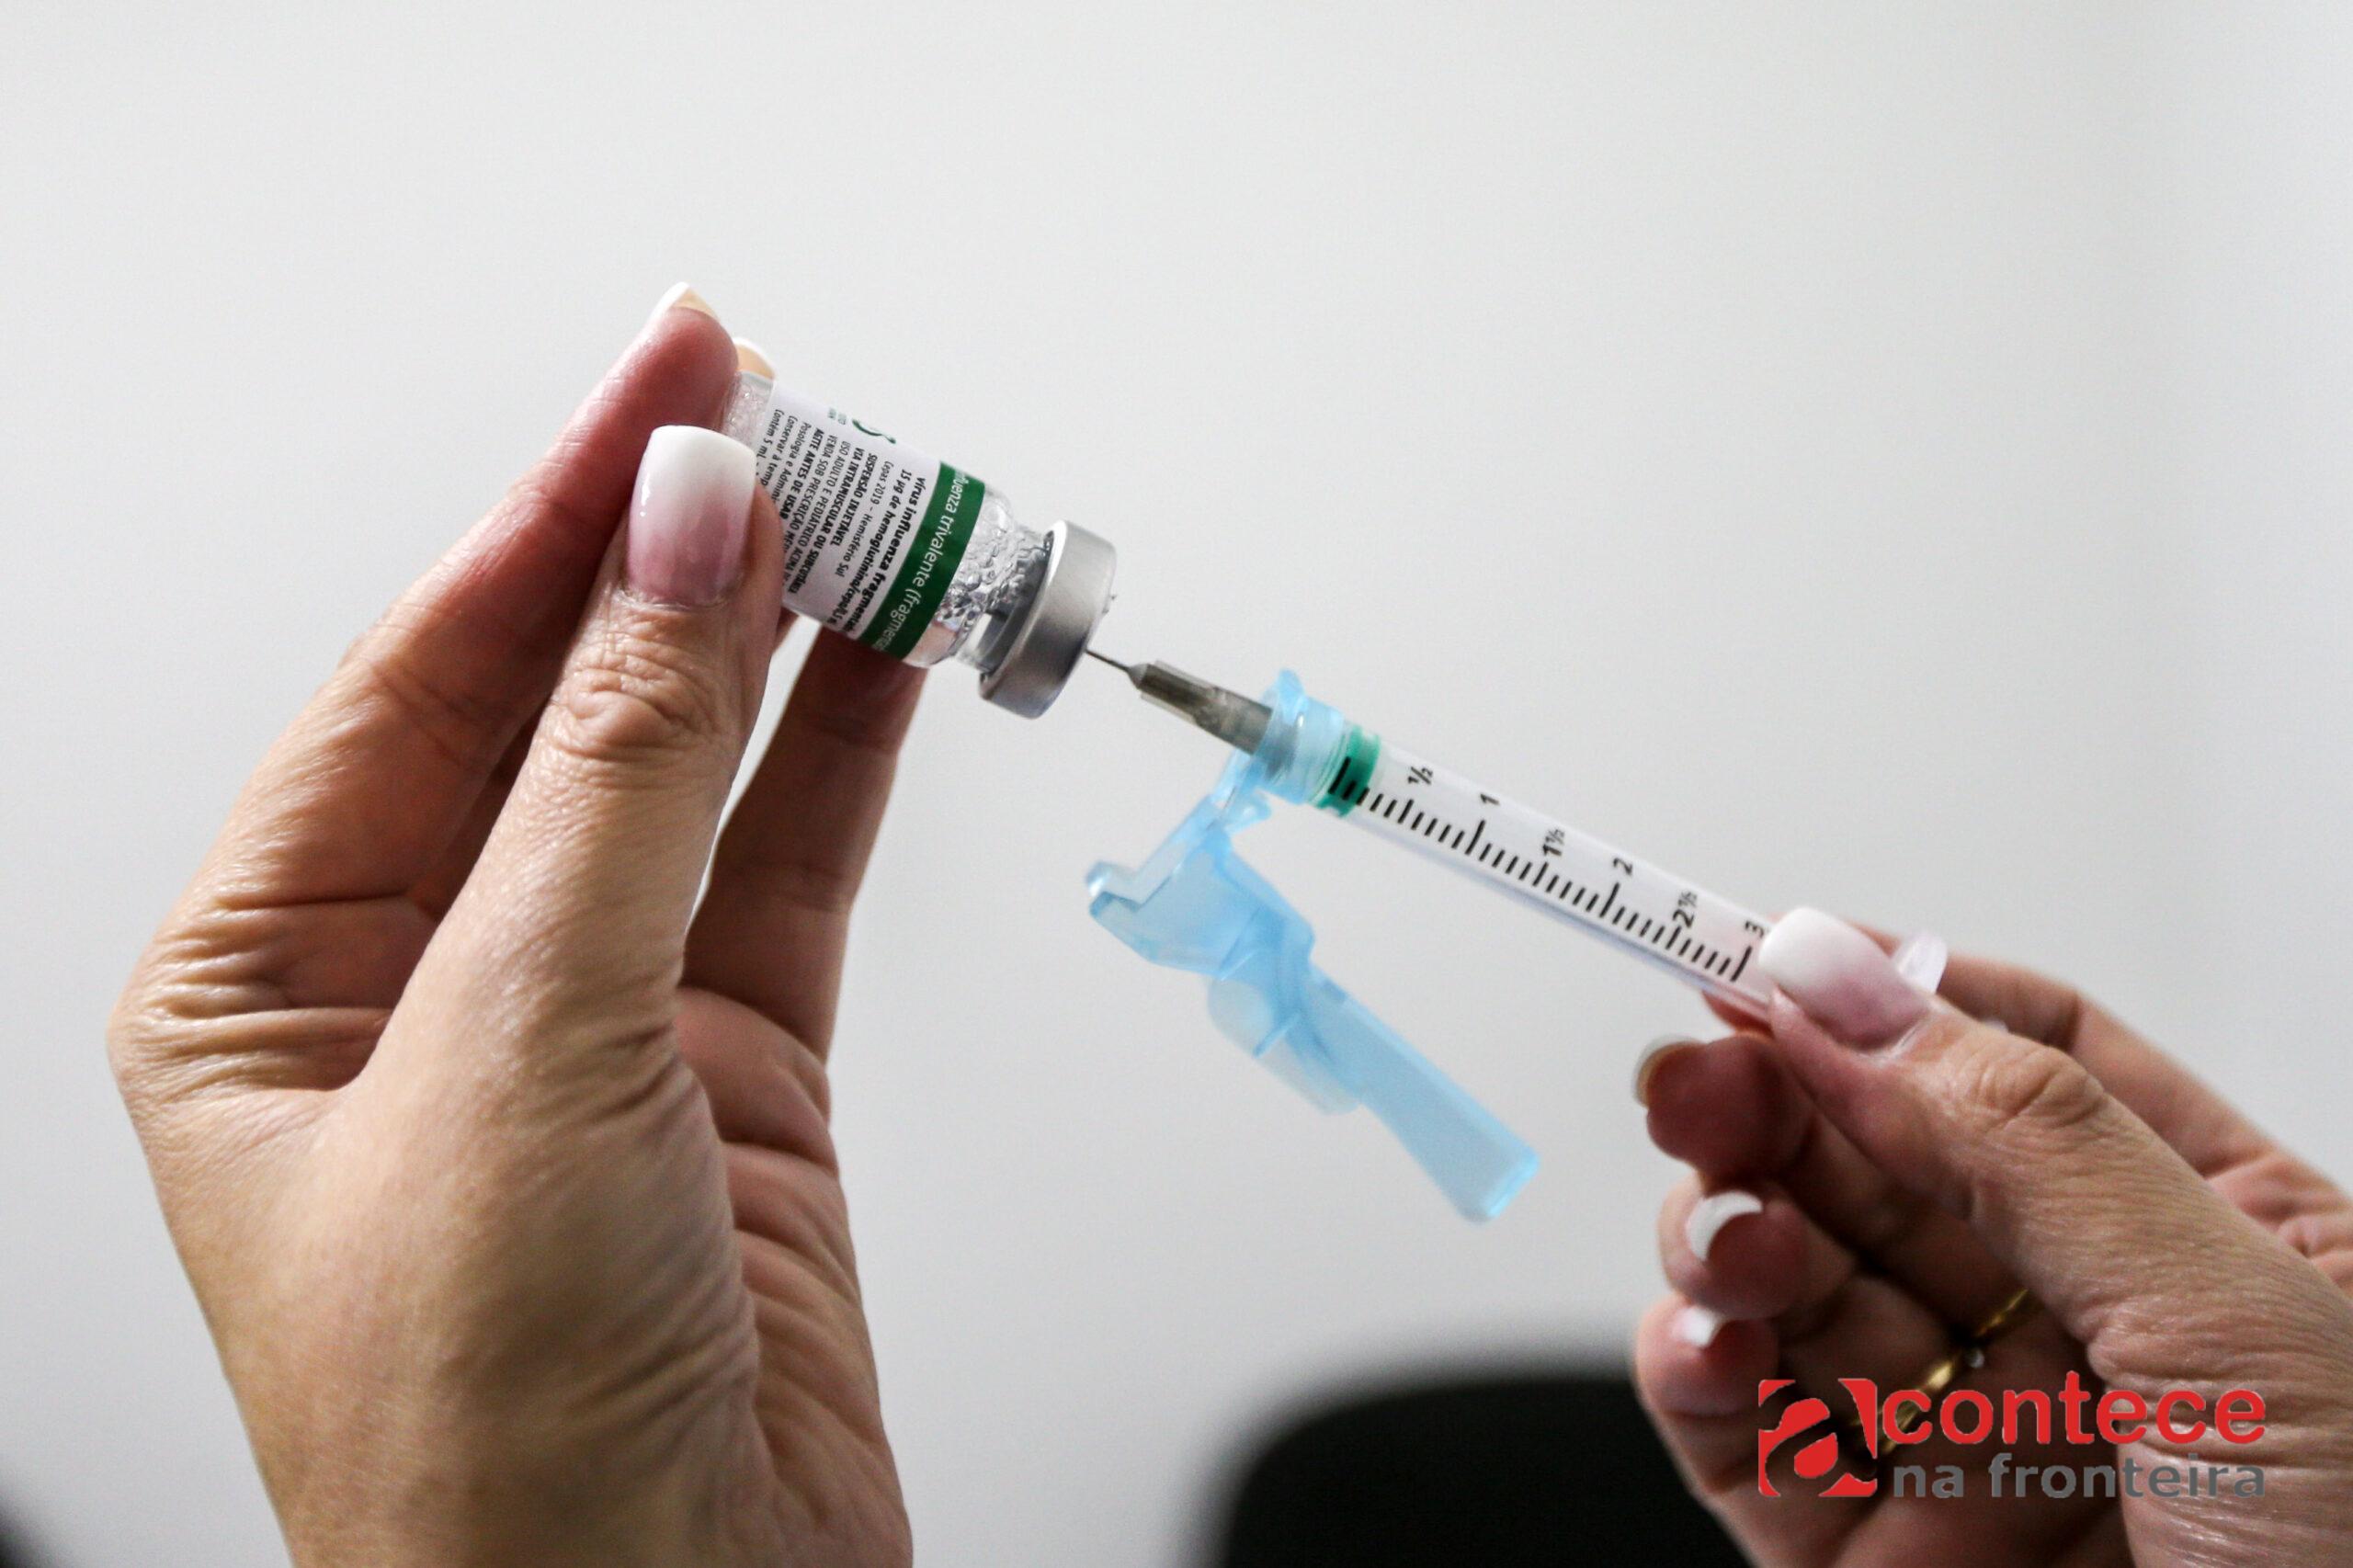 Campanha de vacinação contra a gripe começa nesta segunda para 4,5 milhões de pessoas